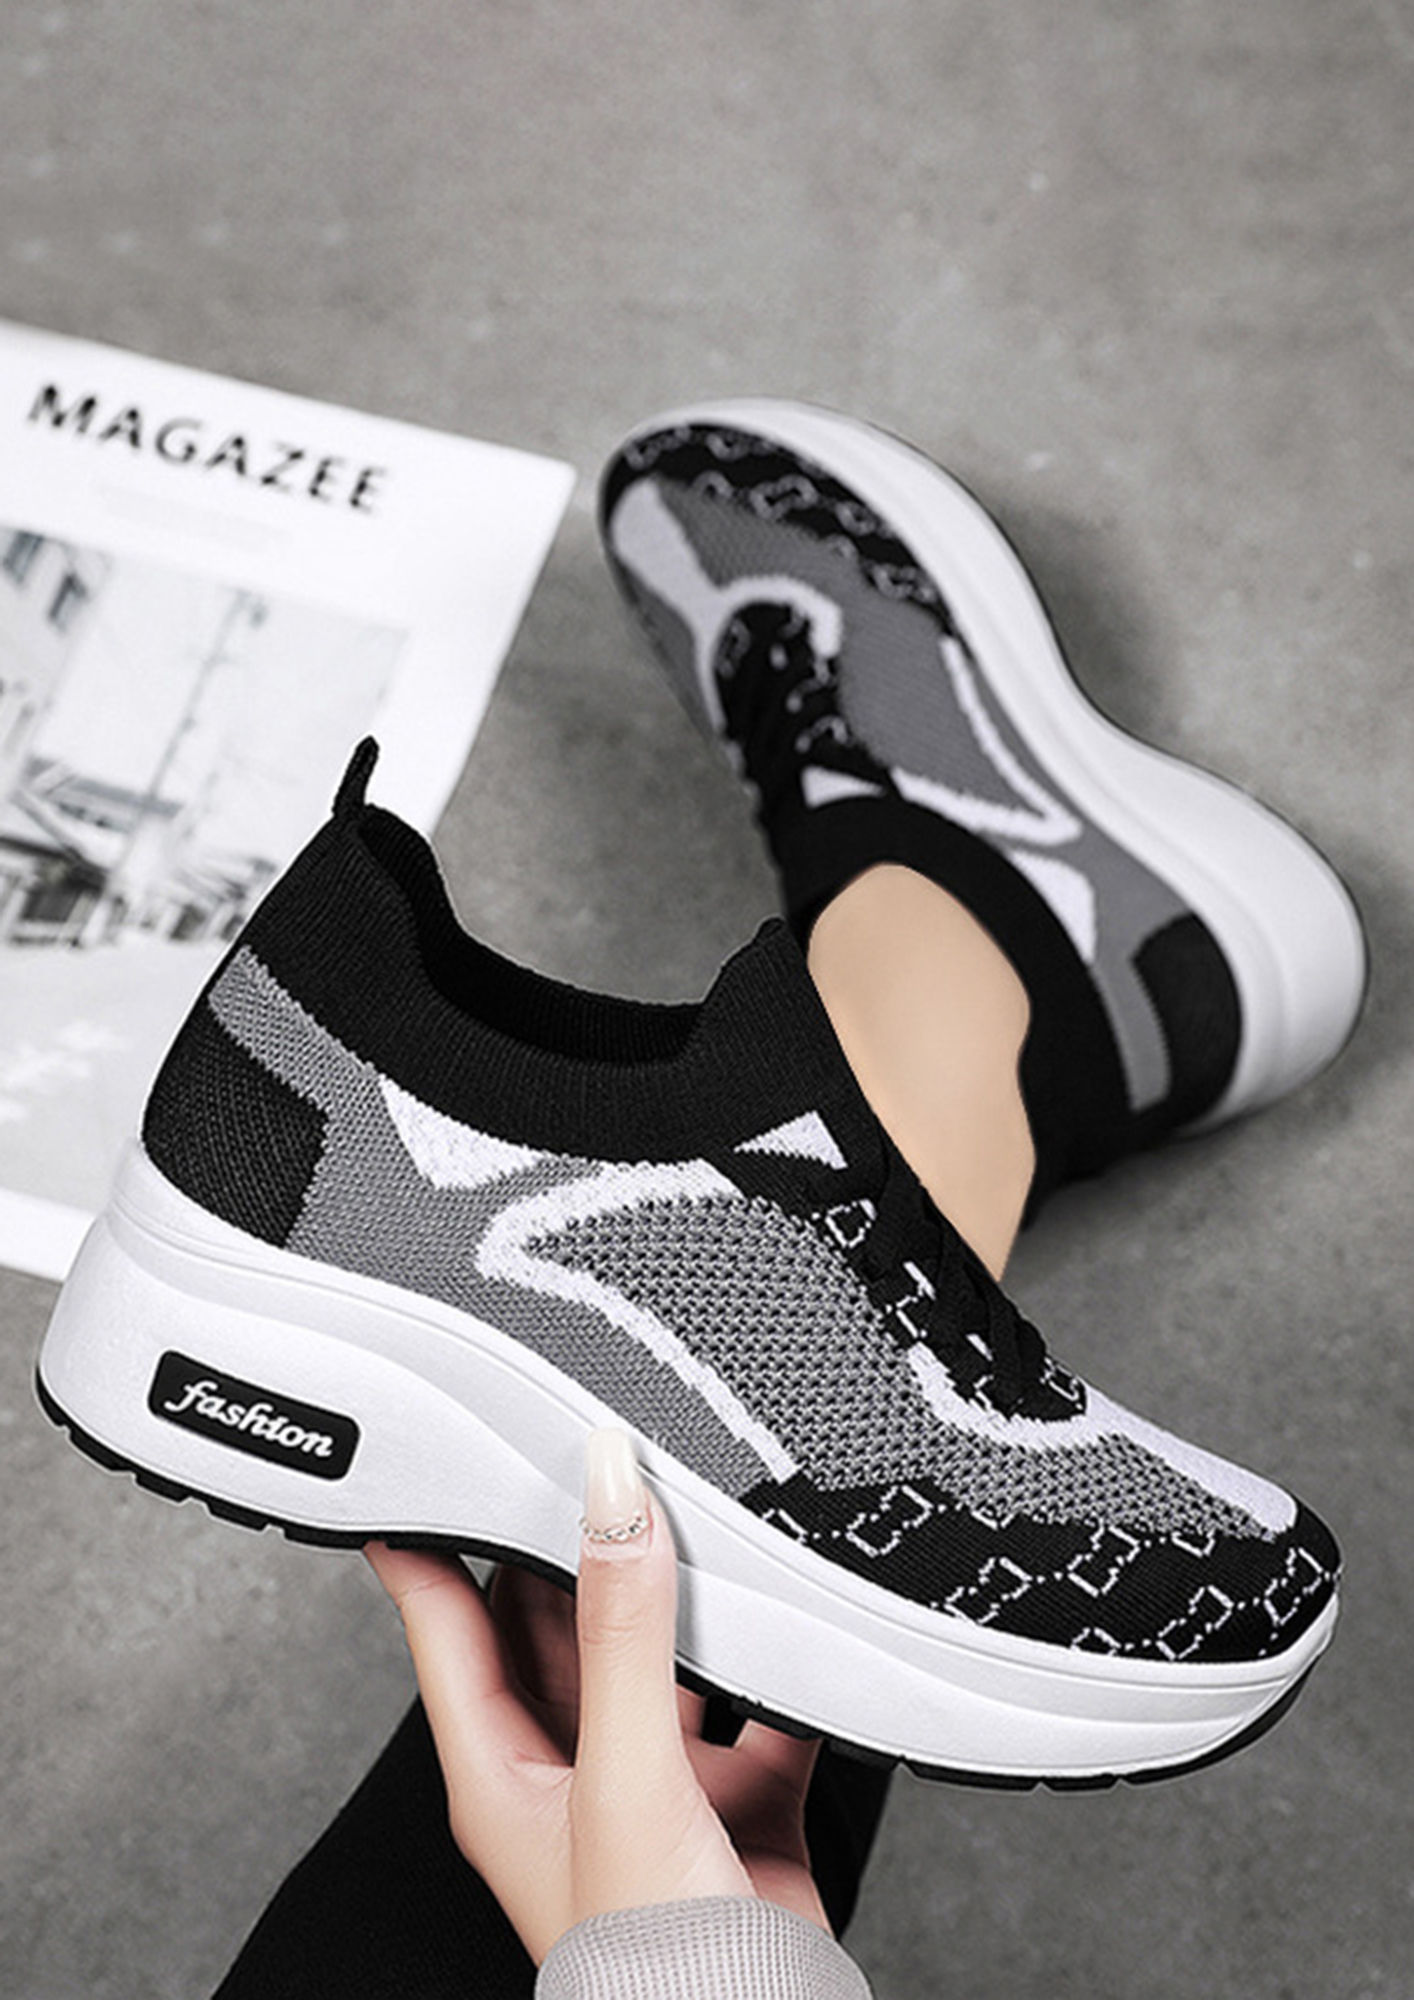 Printed Sneakers